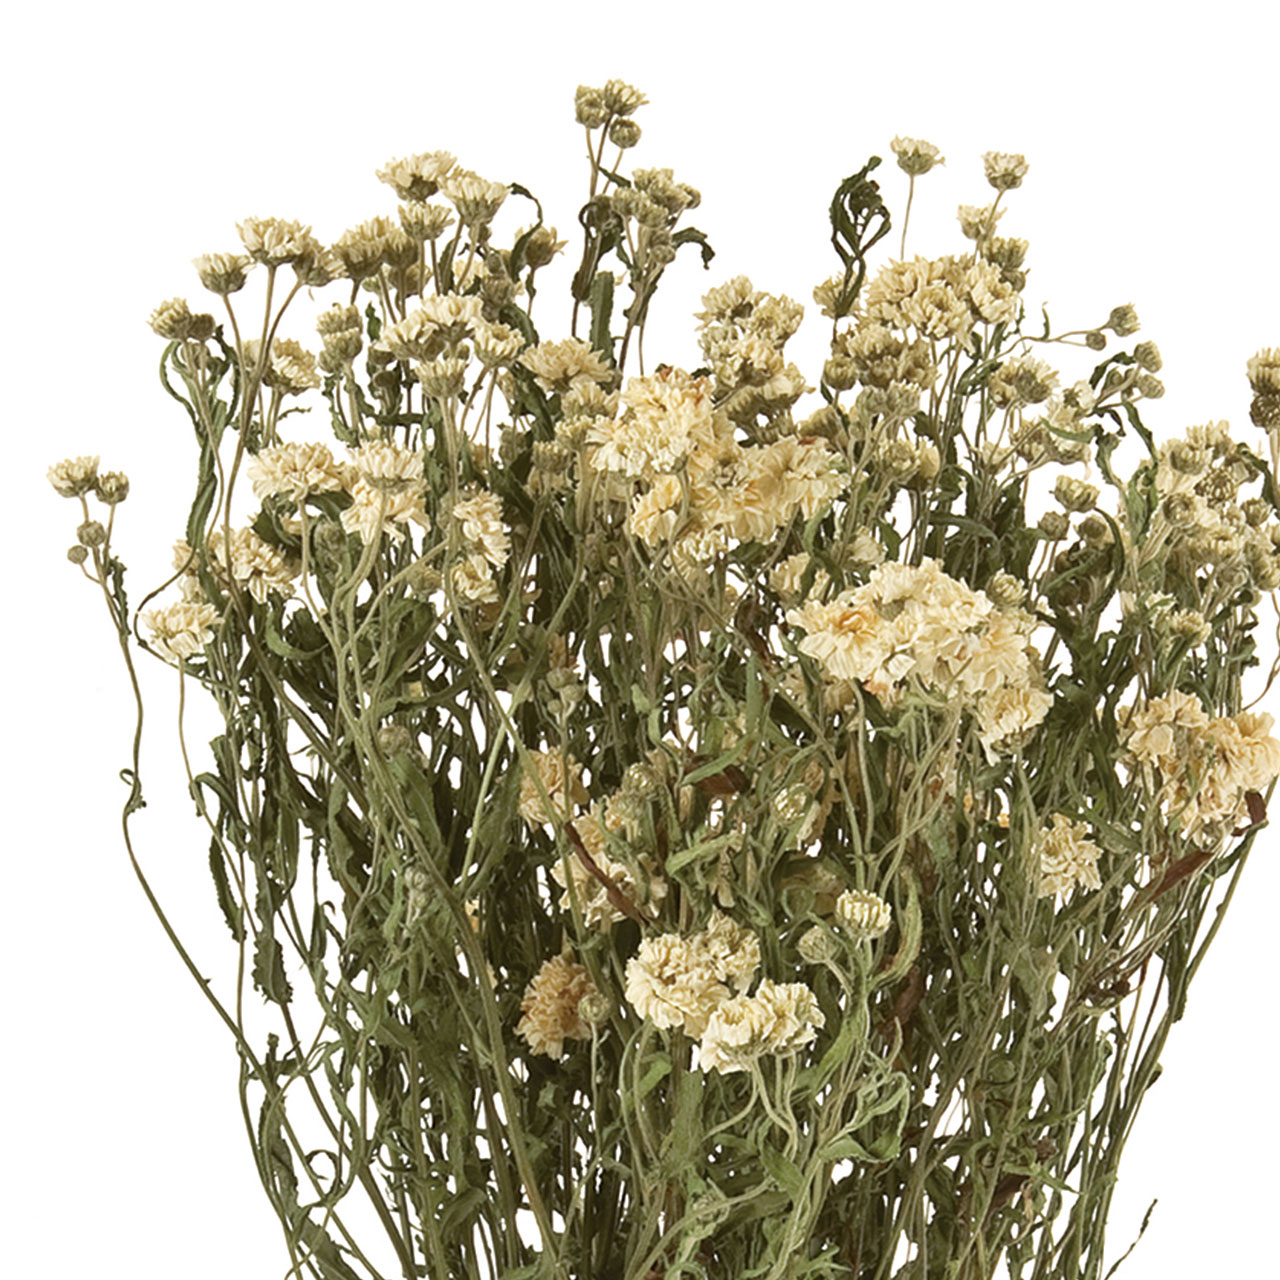 マイフラ】 通販/アキレア ホワイト ドライフラワー FD003033 ナチュラル(全長 約35cm ホワイト): ドライフラワー  ナチュラル素材/全国にMAGIQ、花器、花資材などをお届けします。